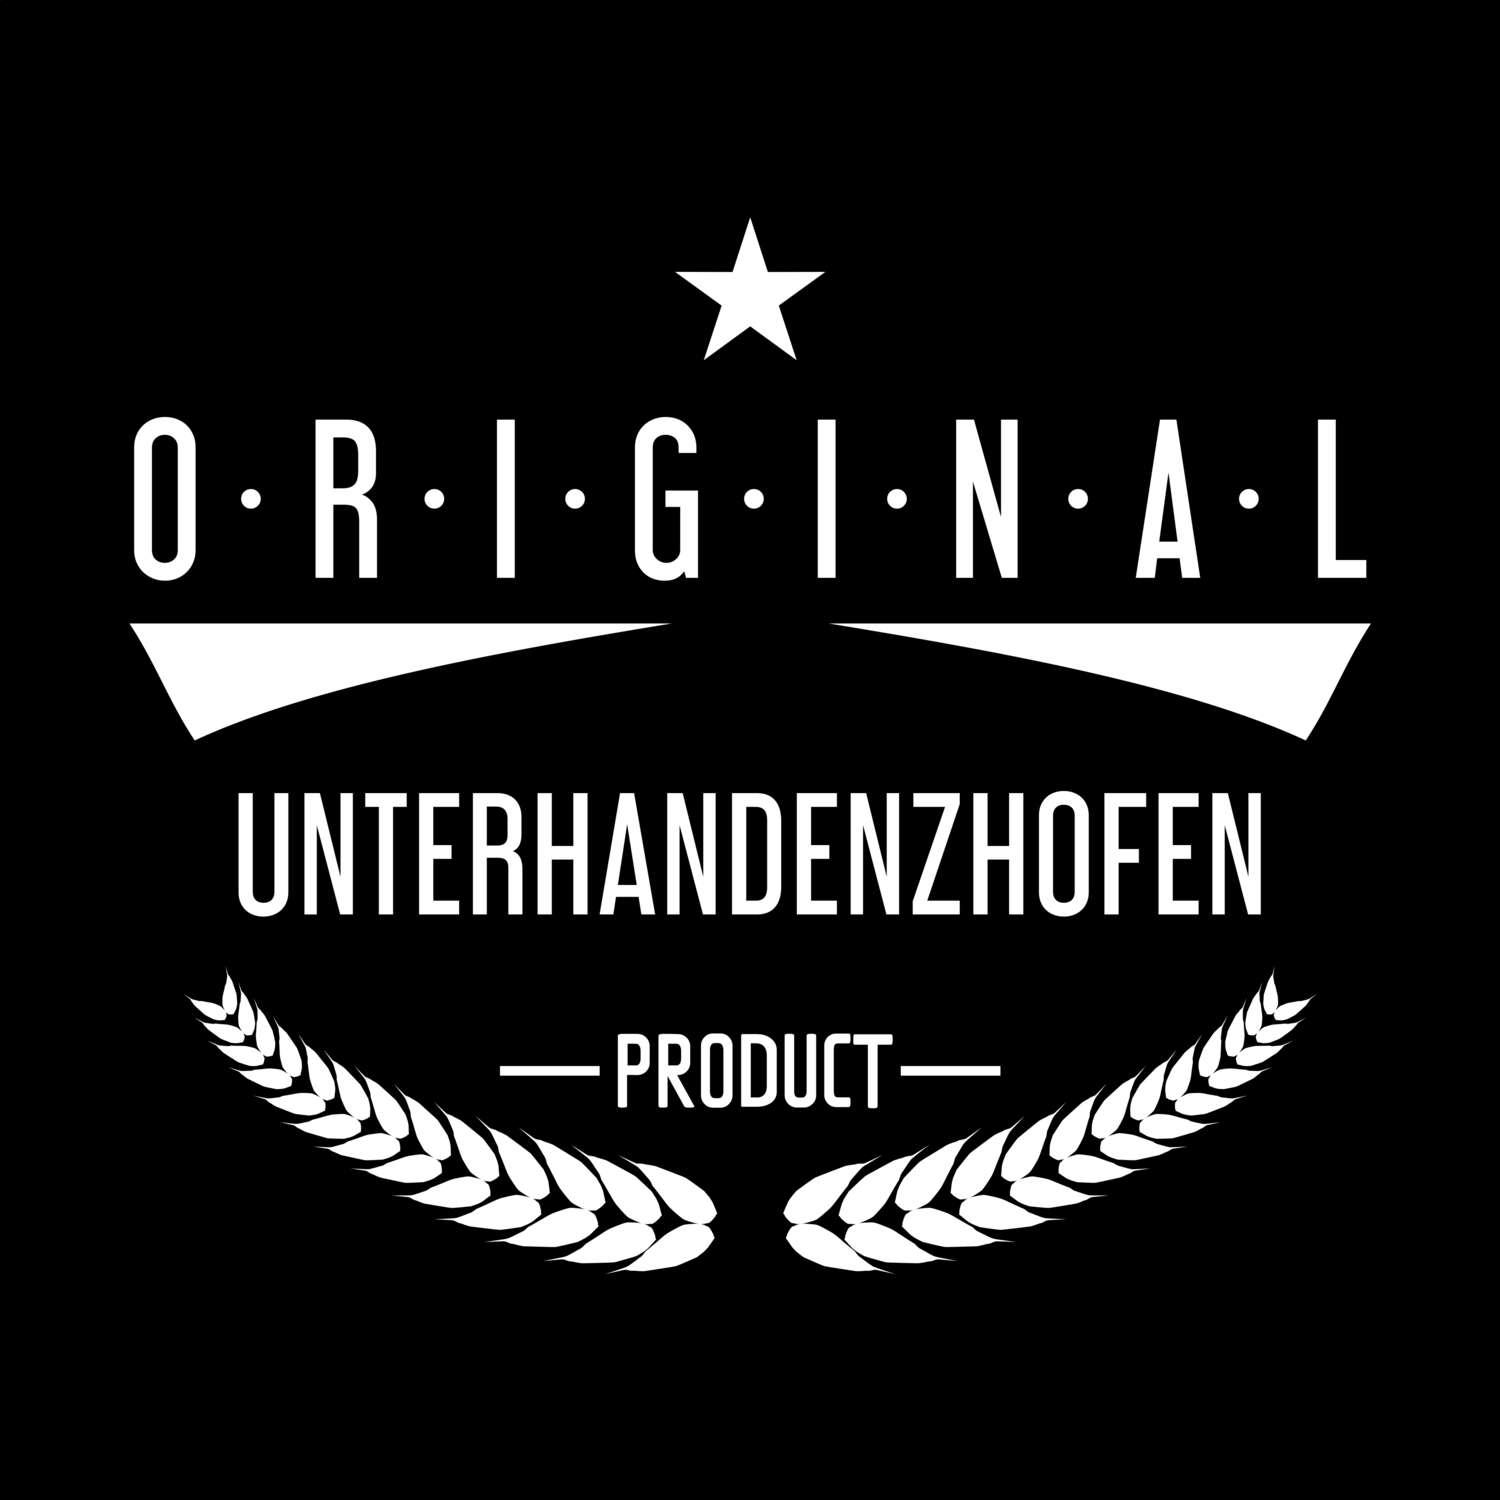 Unterhandenzhofen T-Shirt »Original Product«